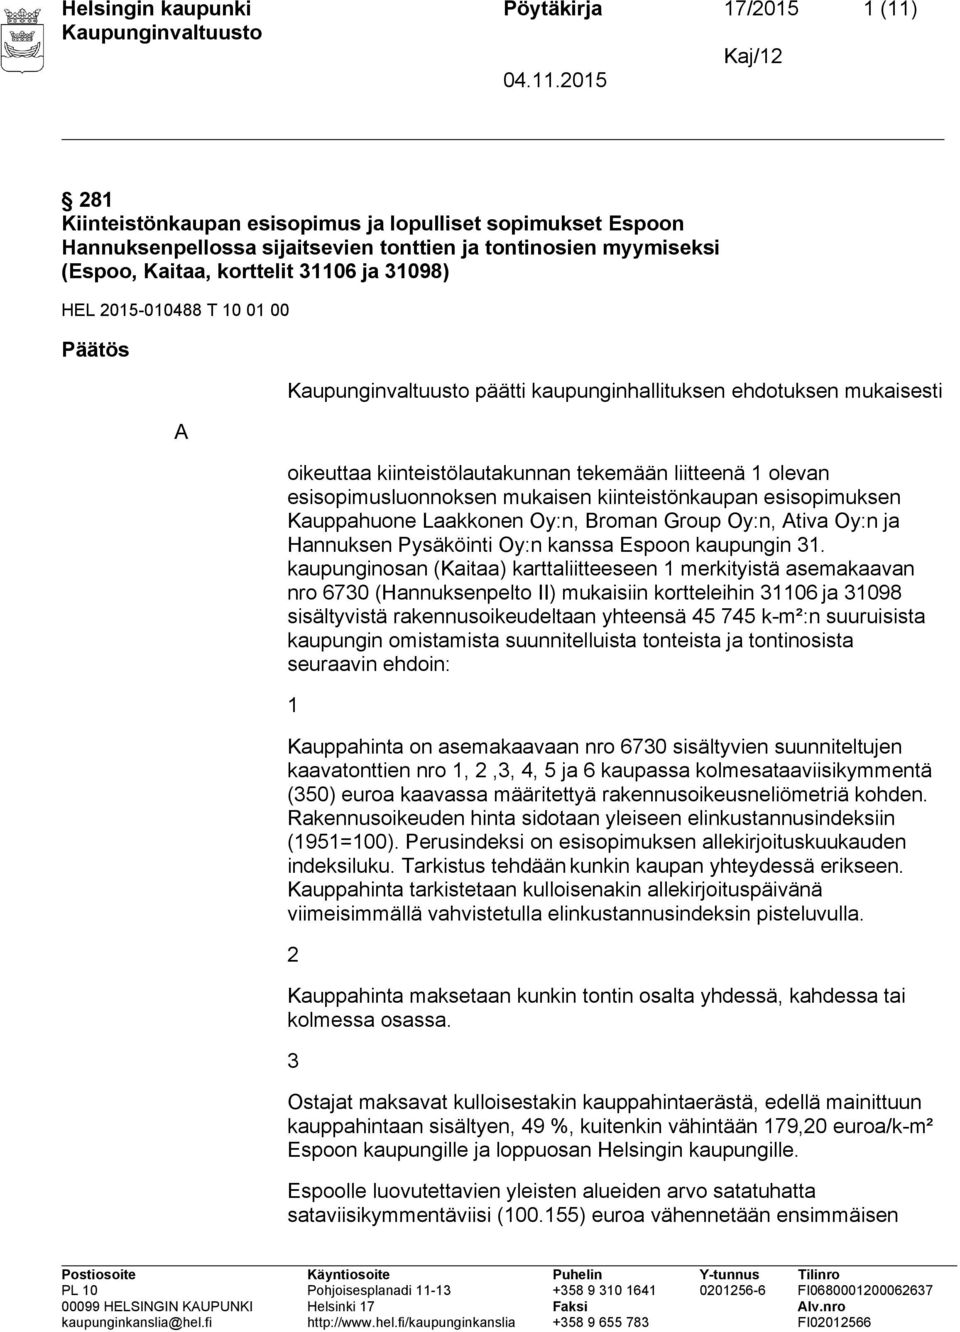 mukaisen kiinteistönkaupan esisopimuksen Kauppahuone Laakkonen Oy:n, Broman Group Oy:n, Ativa Oy:n ja Hannuksen Pysäköinti Oy:n kanssa Espoon kaupungin 31.